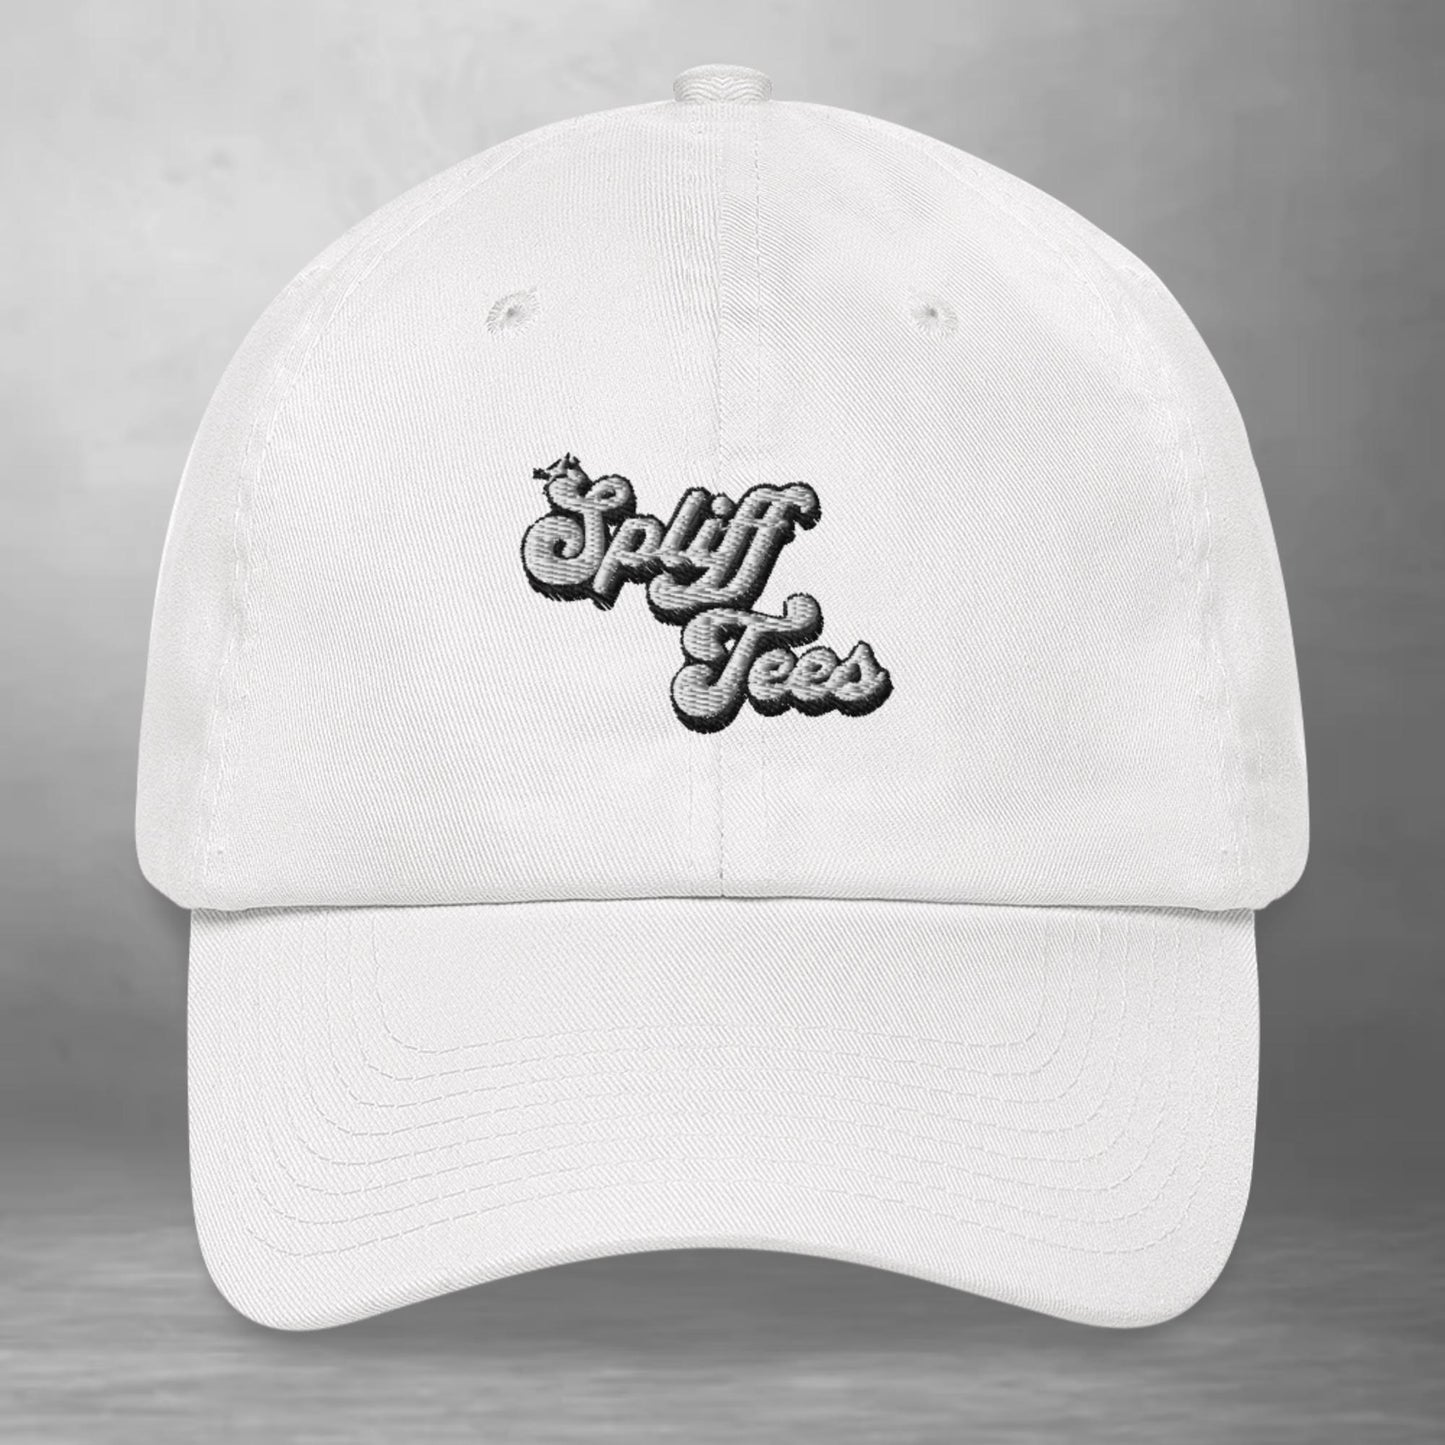 Spliff Tees Dad hat